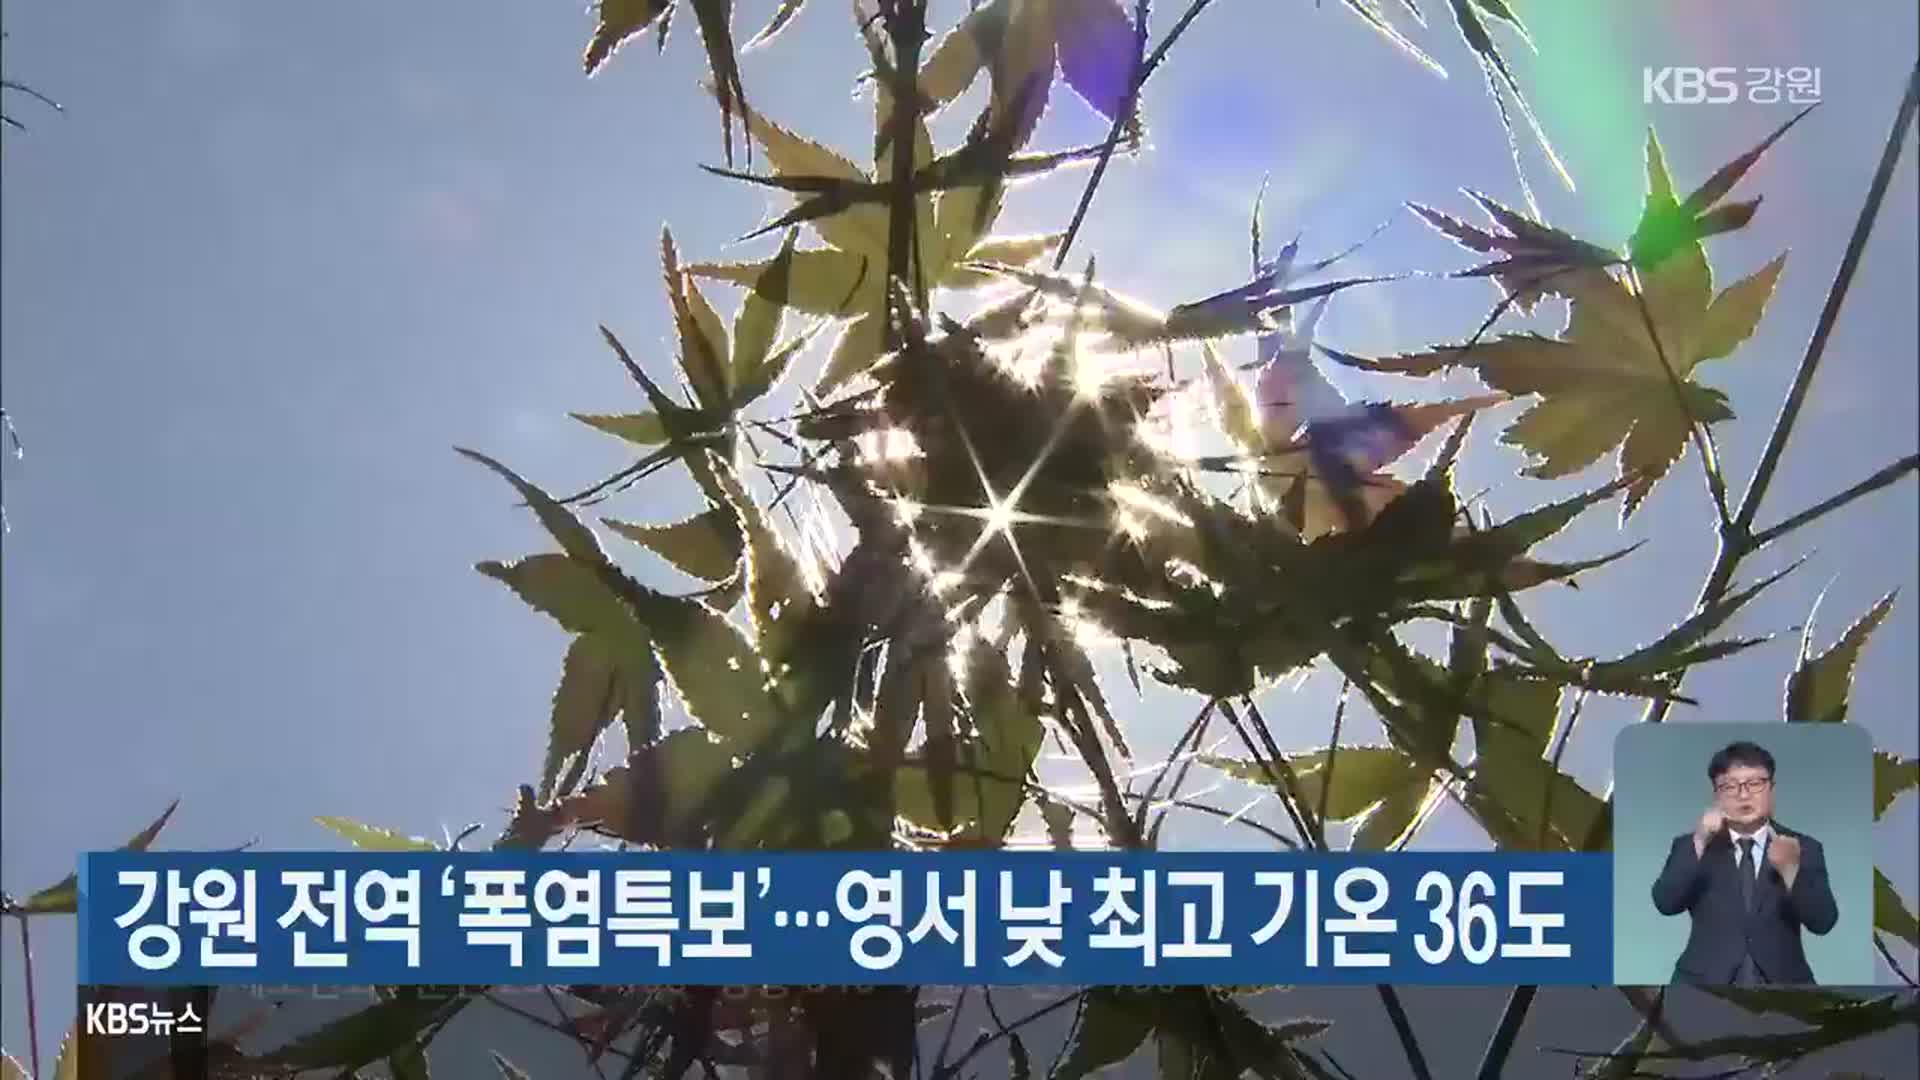 강원 전역 ‘폭염특보’…영서 낮 최고 기온 36도